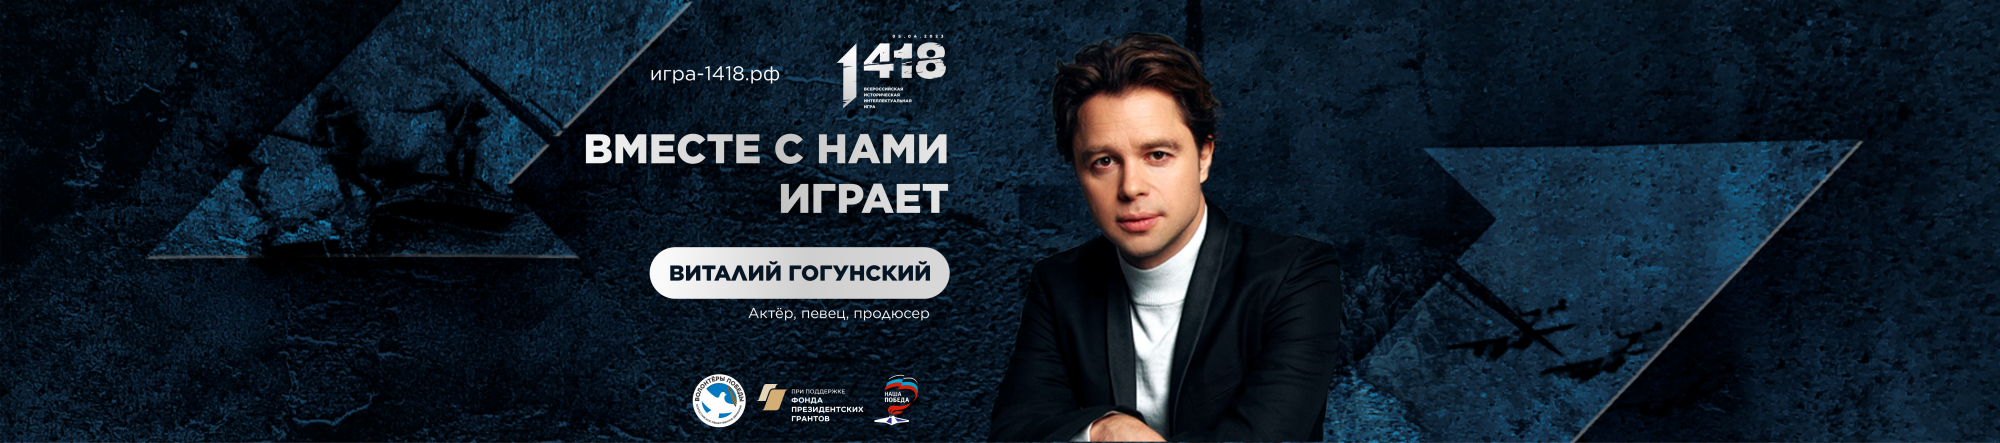 Виталий Гогунский поддерживает Всероссийскую историческую интеллектуальную игру «1 418»